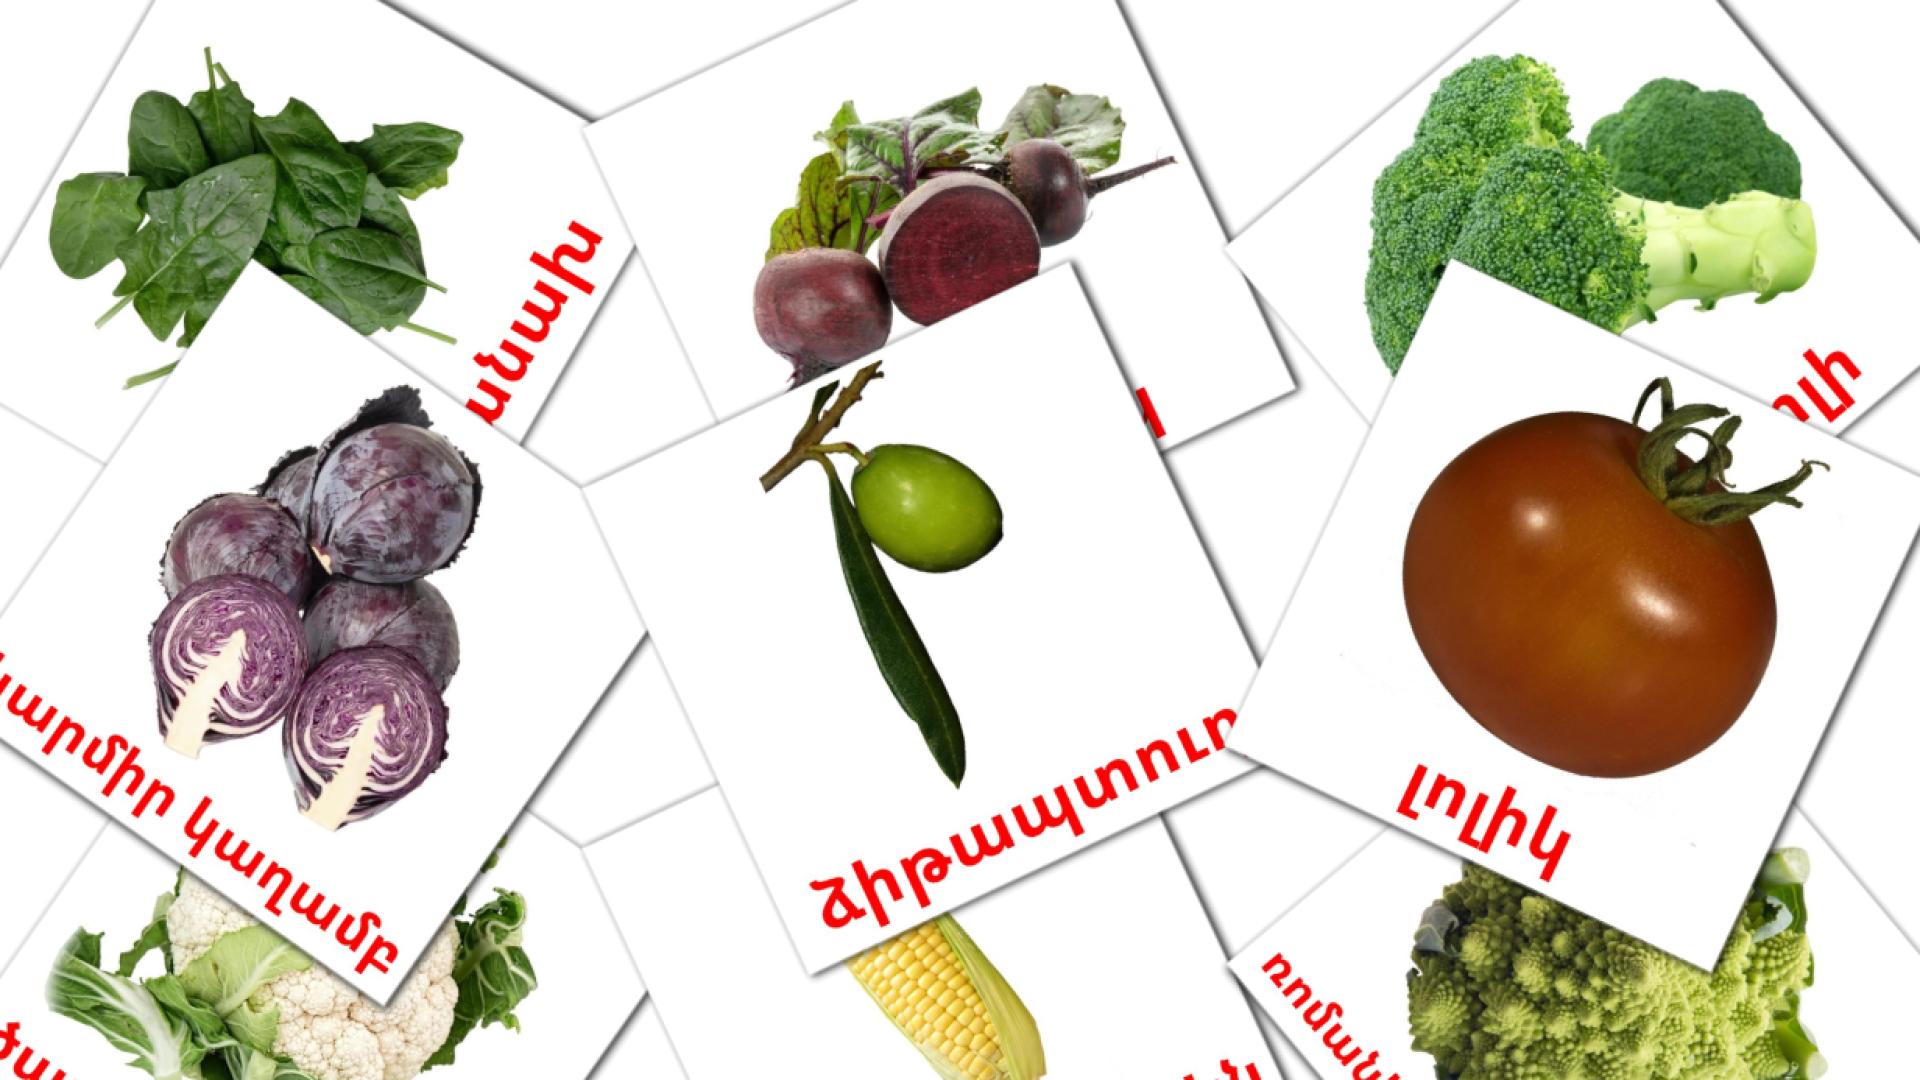 Vegetables - armenian vocabulary cards